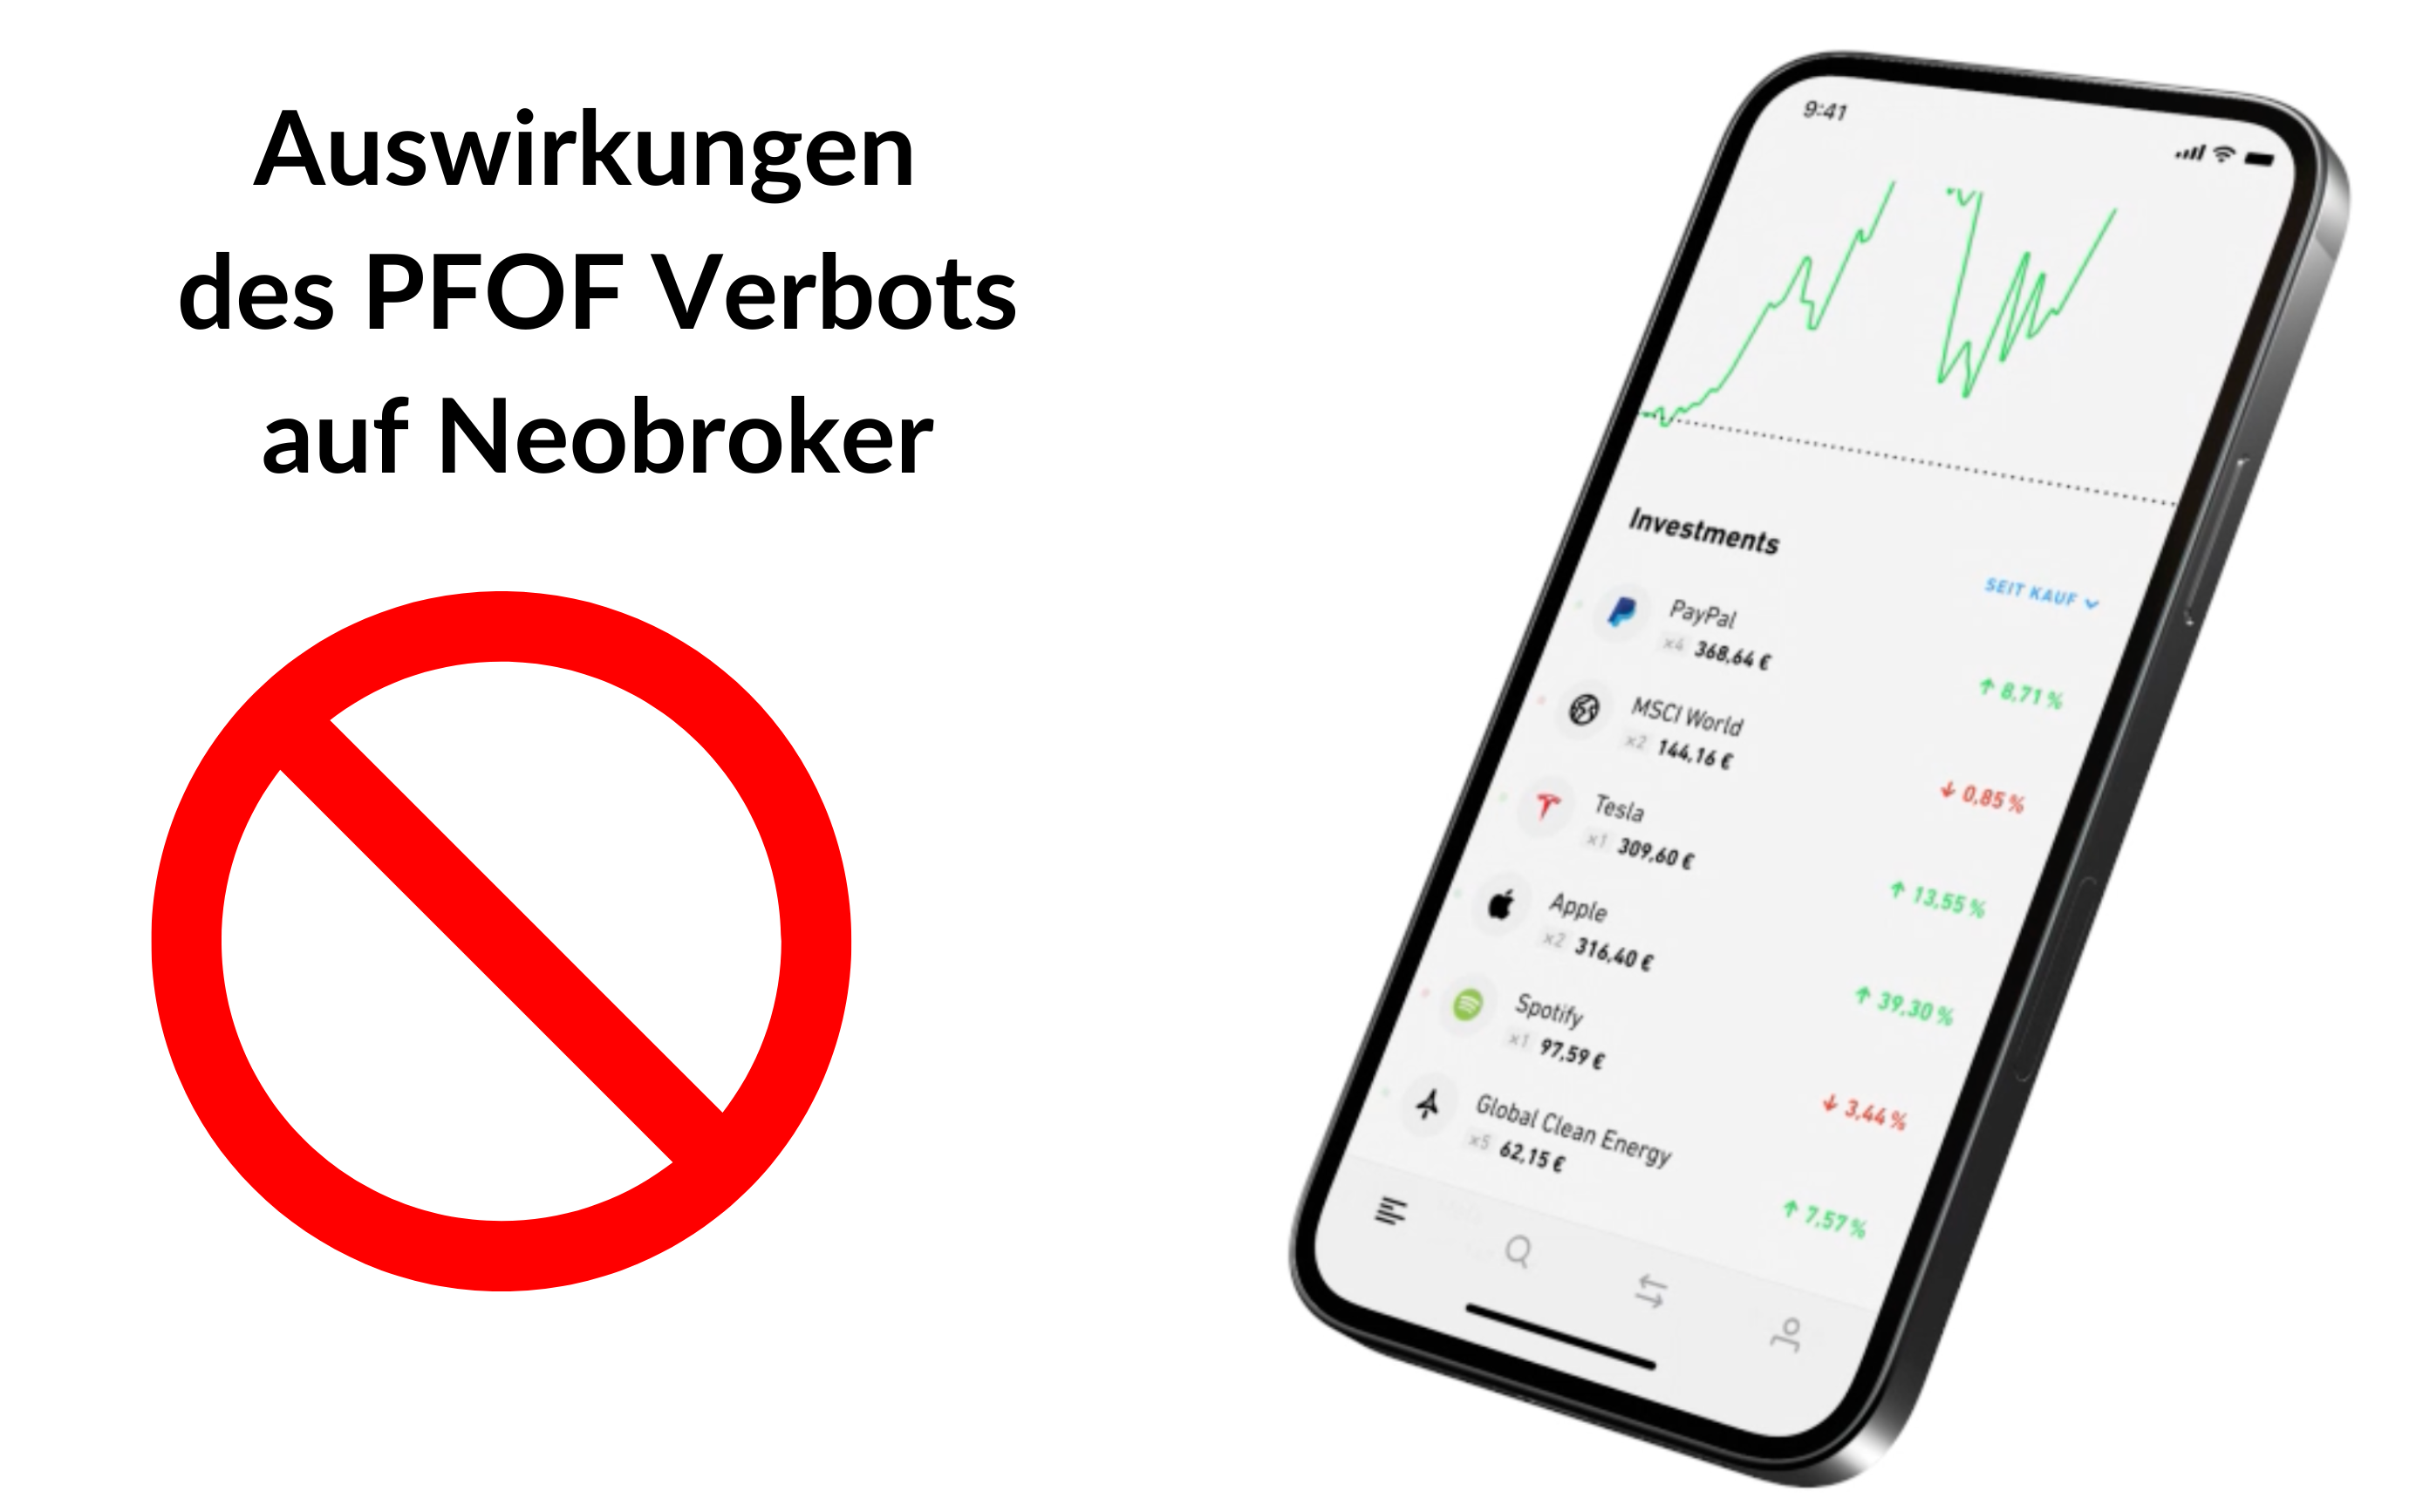 Auswirkungen des PFOF Verbots auf Neobroker